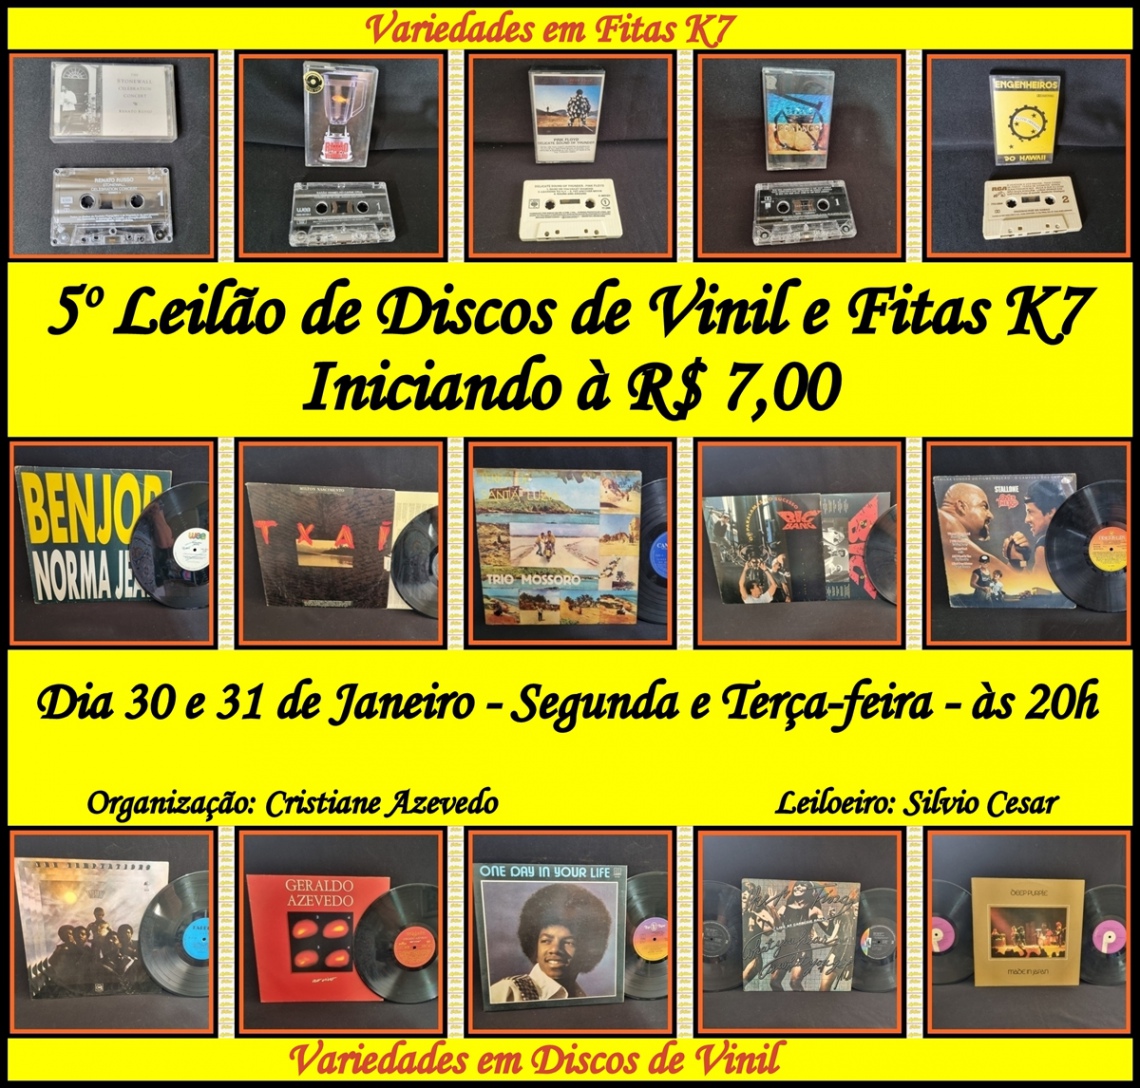 5º Leilao de Discos de Vinil e Fitas K7 - Iniciando a R$ 7,00